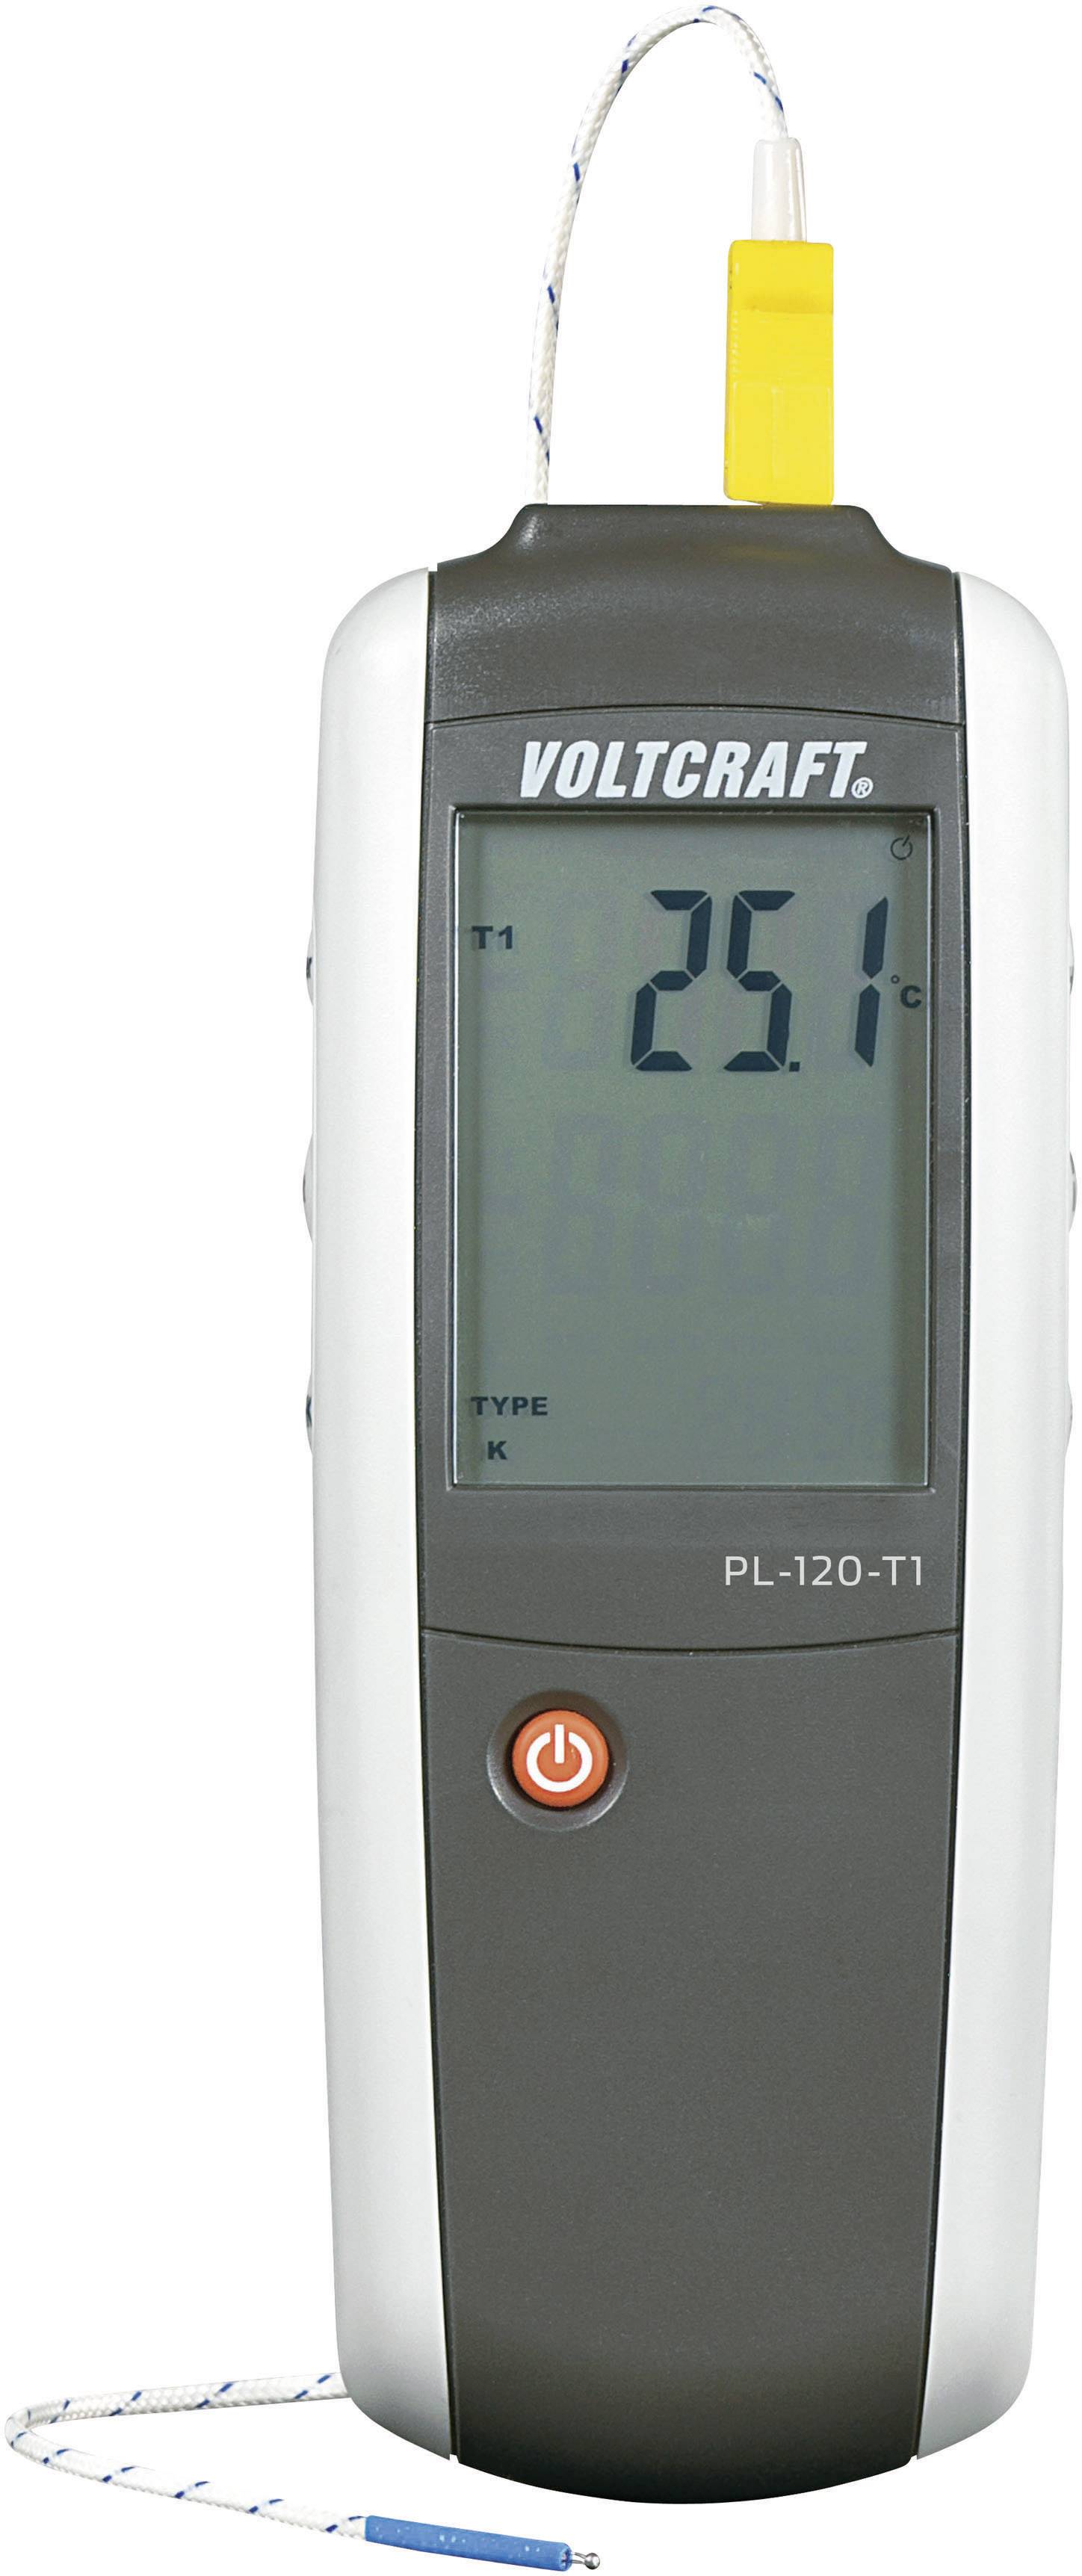 VOLTCRAFT Temperatur-Messgerät VOLTCRAFT PL-120 T1 -200 bis +1372 °C Fühler-Typ K, J Kalibriert nach